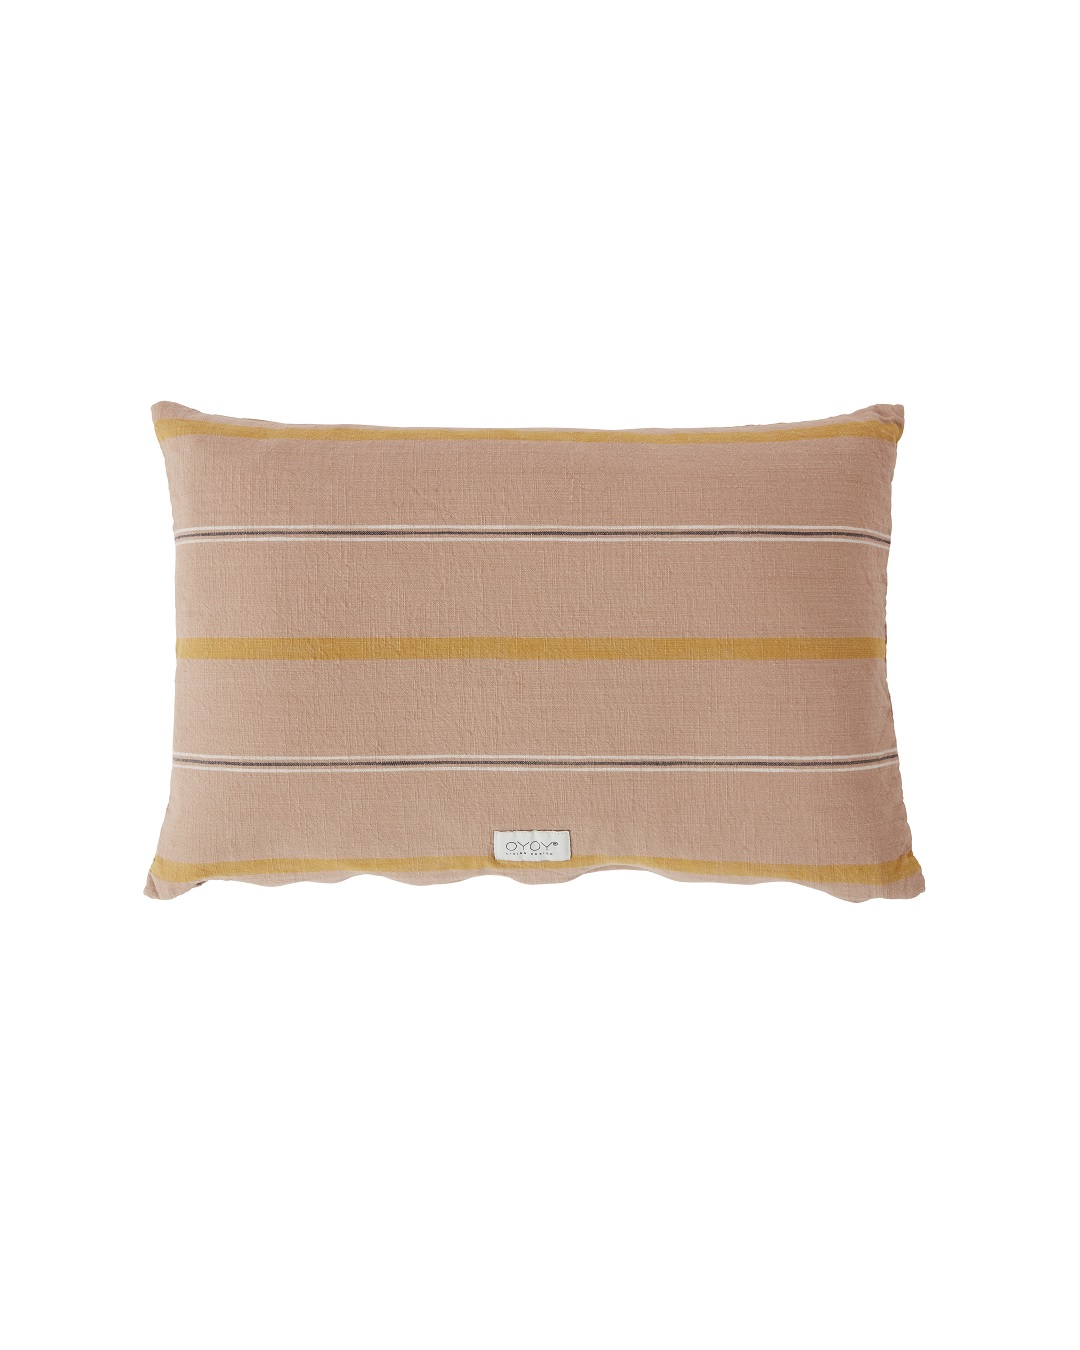 Kyoto dark caramel stripe cushion